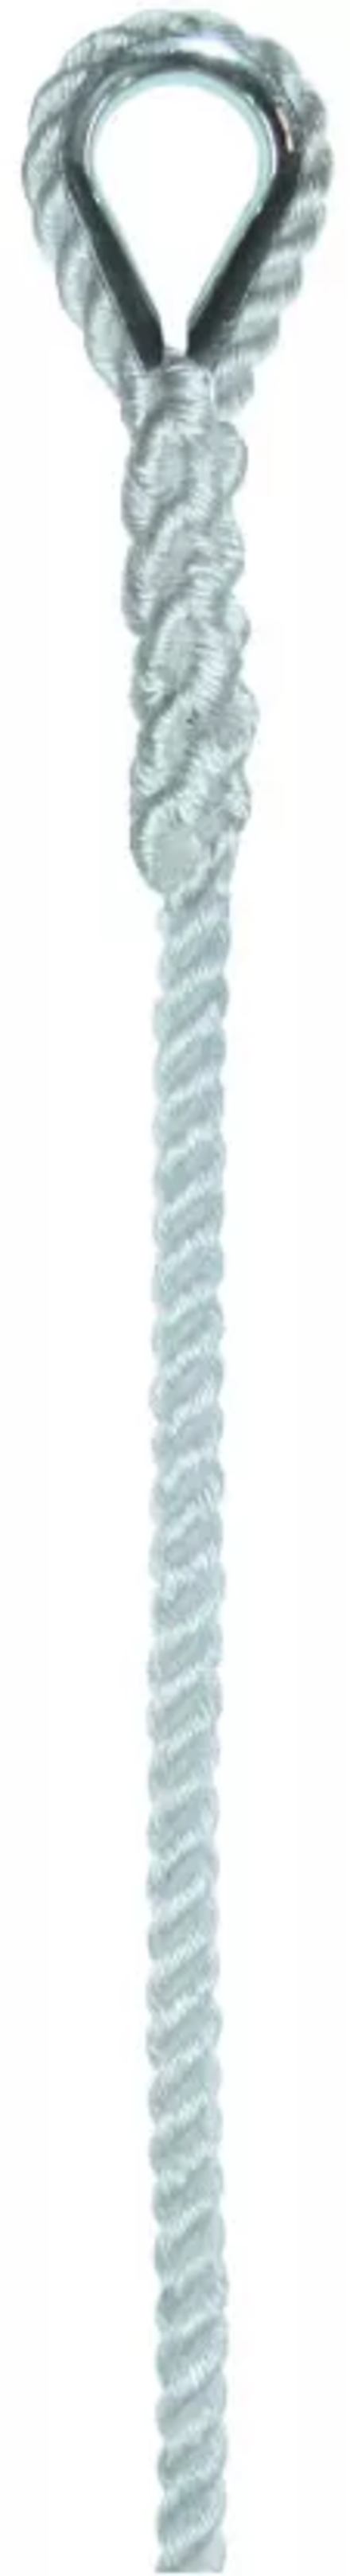 Élingue corde d.6 mm 1 boucle cossée cmu 56 kg long 1 m LEVAC - 4407D